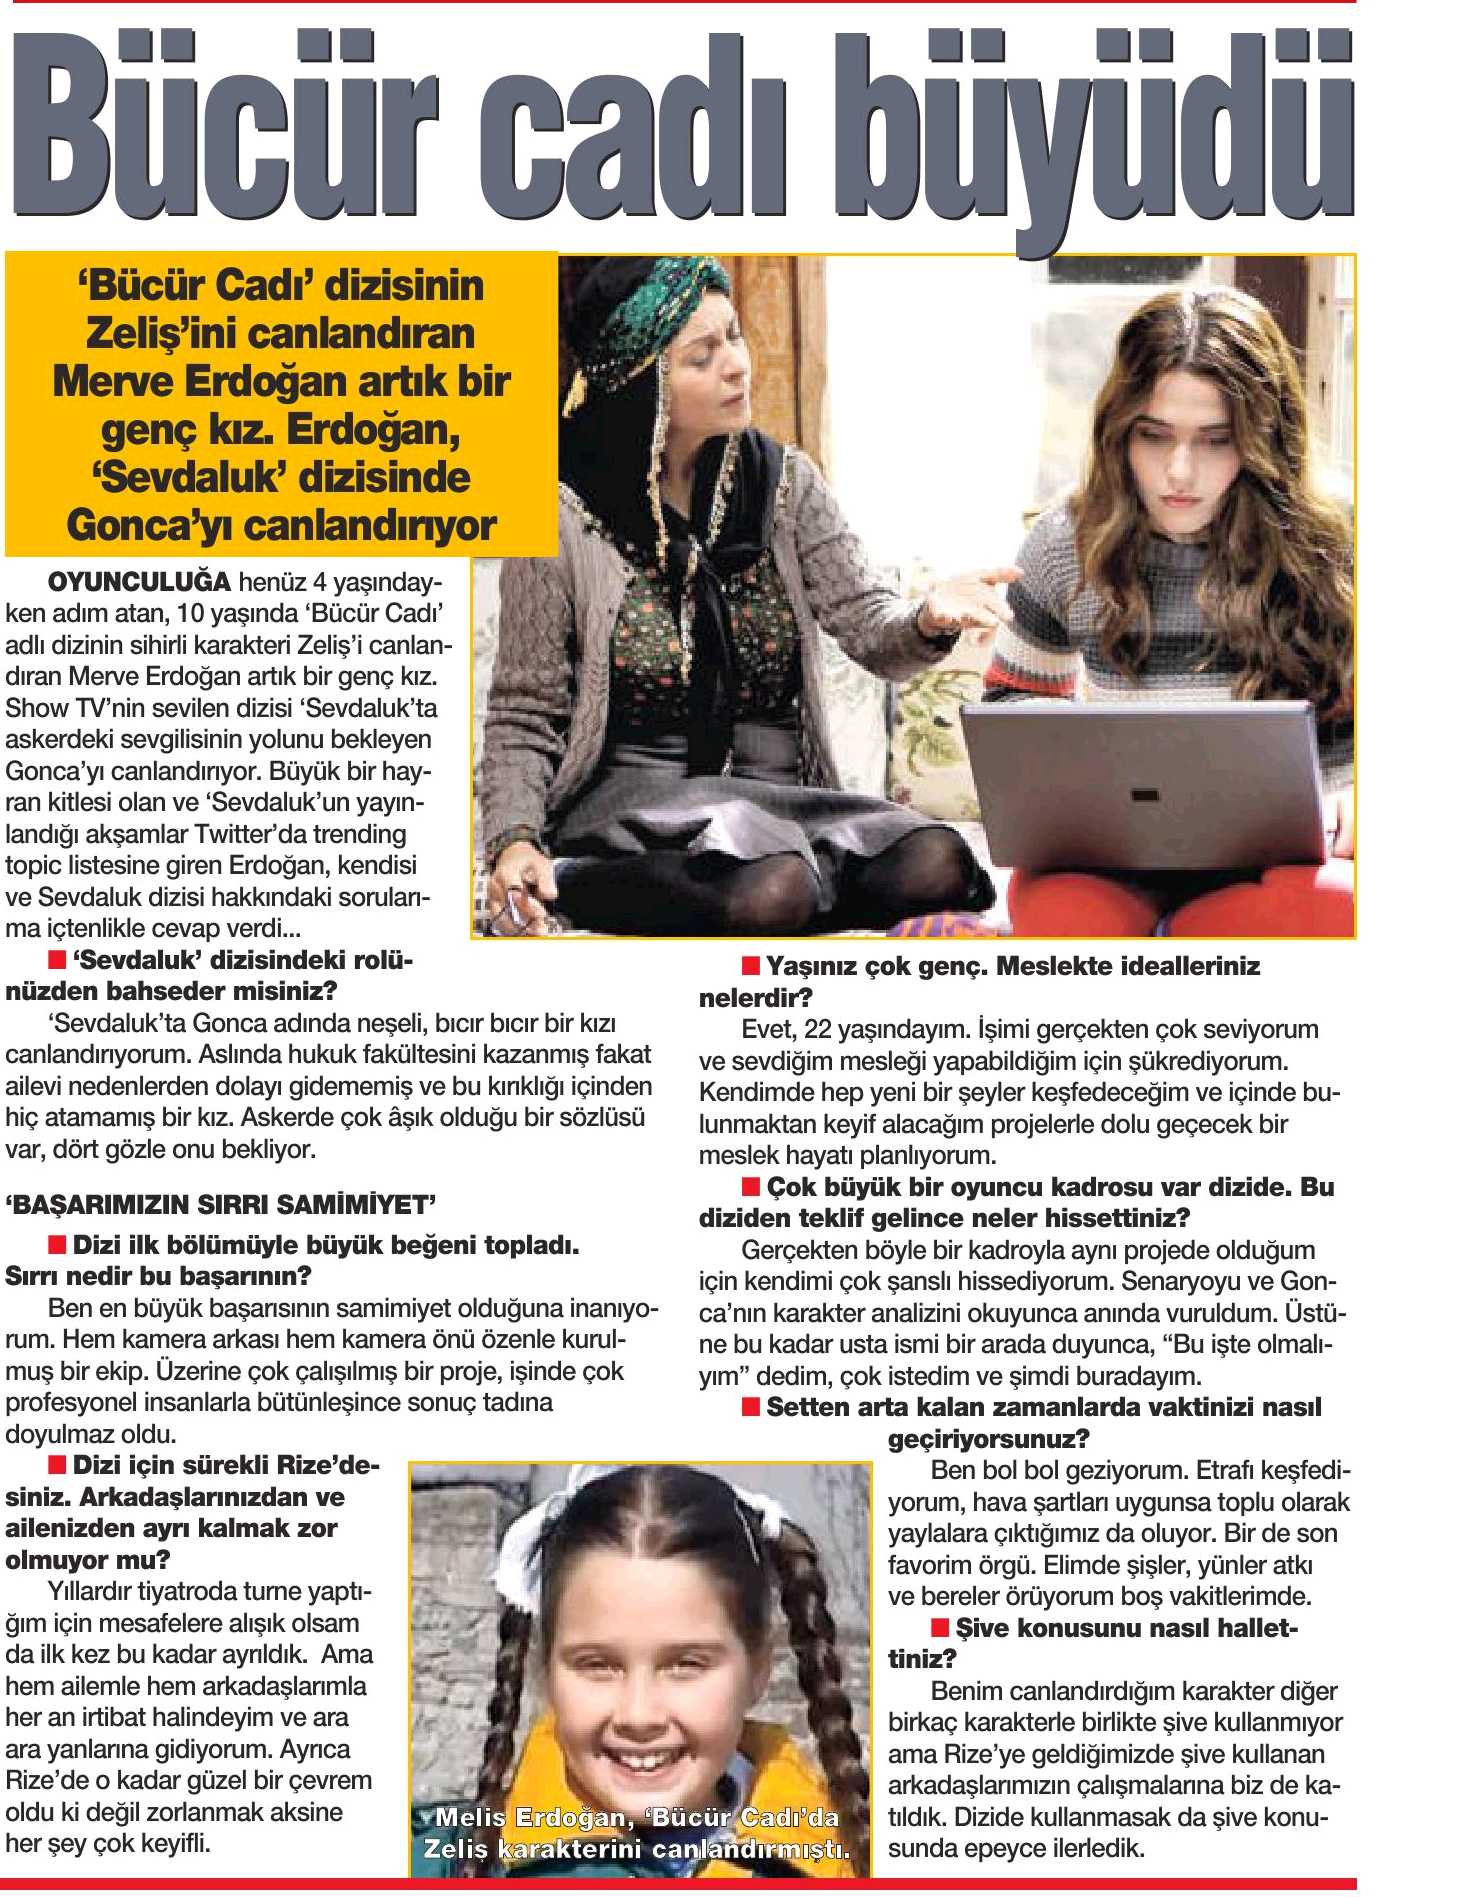 Merve Erdoğan - HaberTürk HT Magazin Gazetesi Röportajı 3